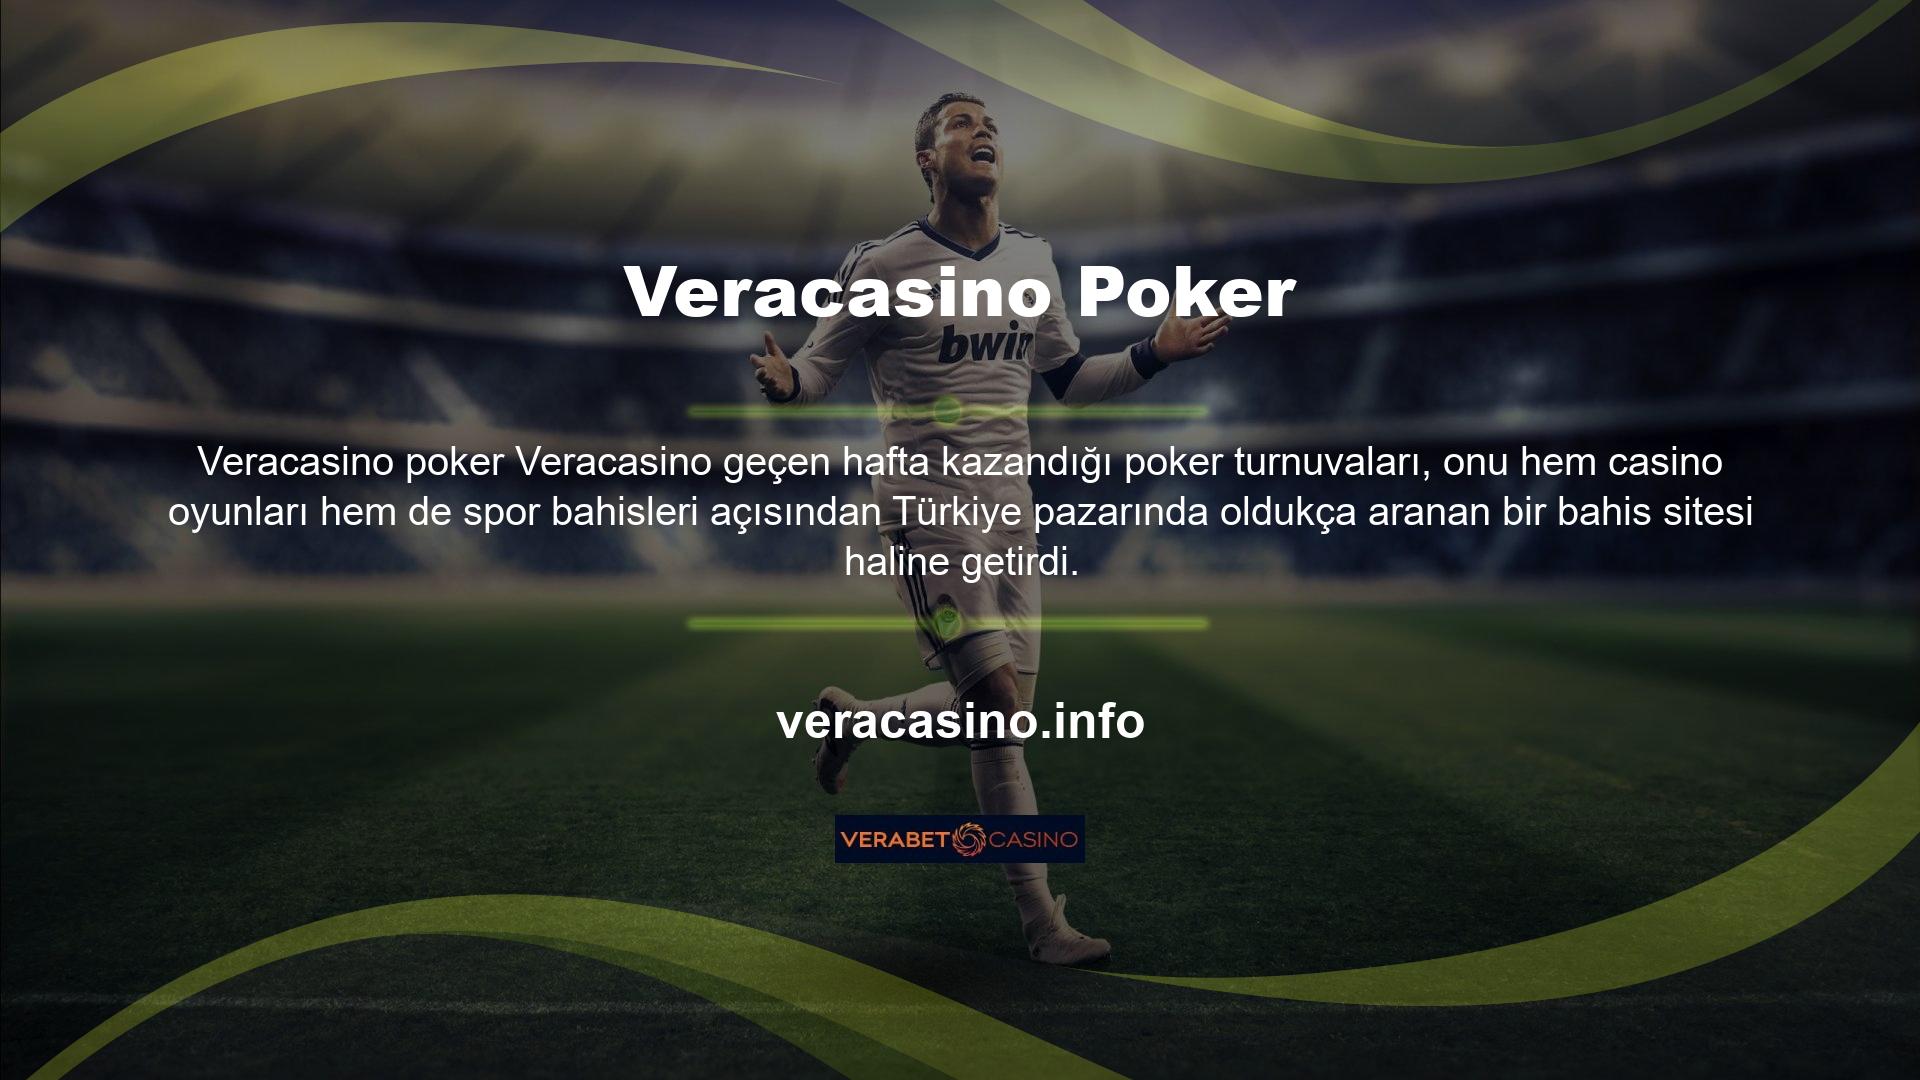 Kullanıcı memnuniyetine odaklanan Veracasino casino sitesi, bu hedefi karşılamak için spor bahisleri ve casino oyunları yelpazesini genişletiyor